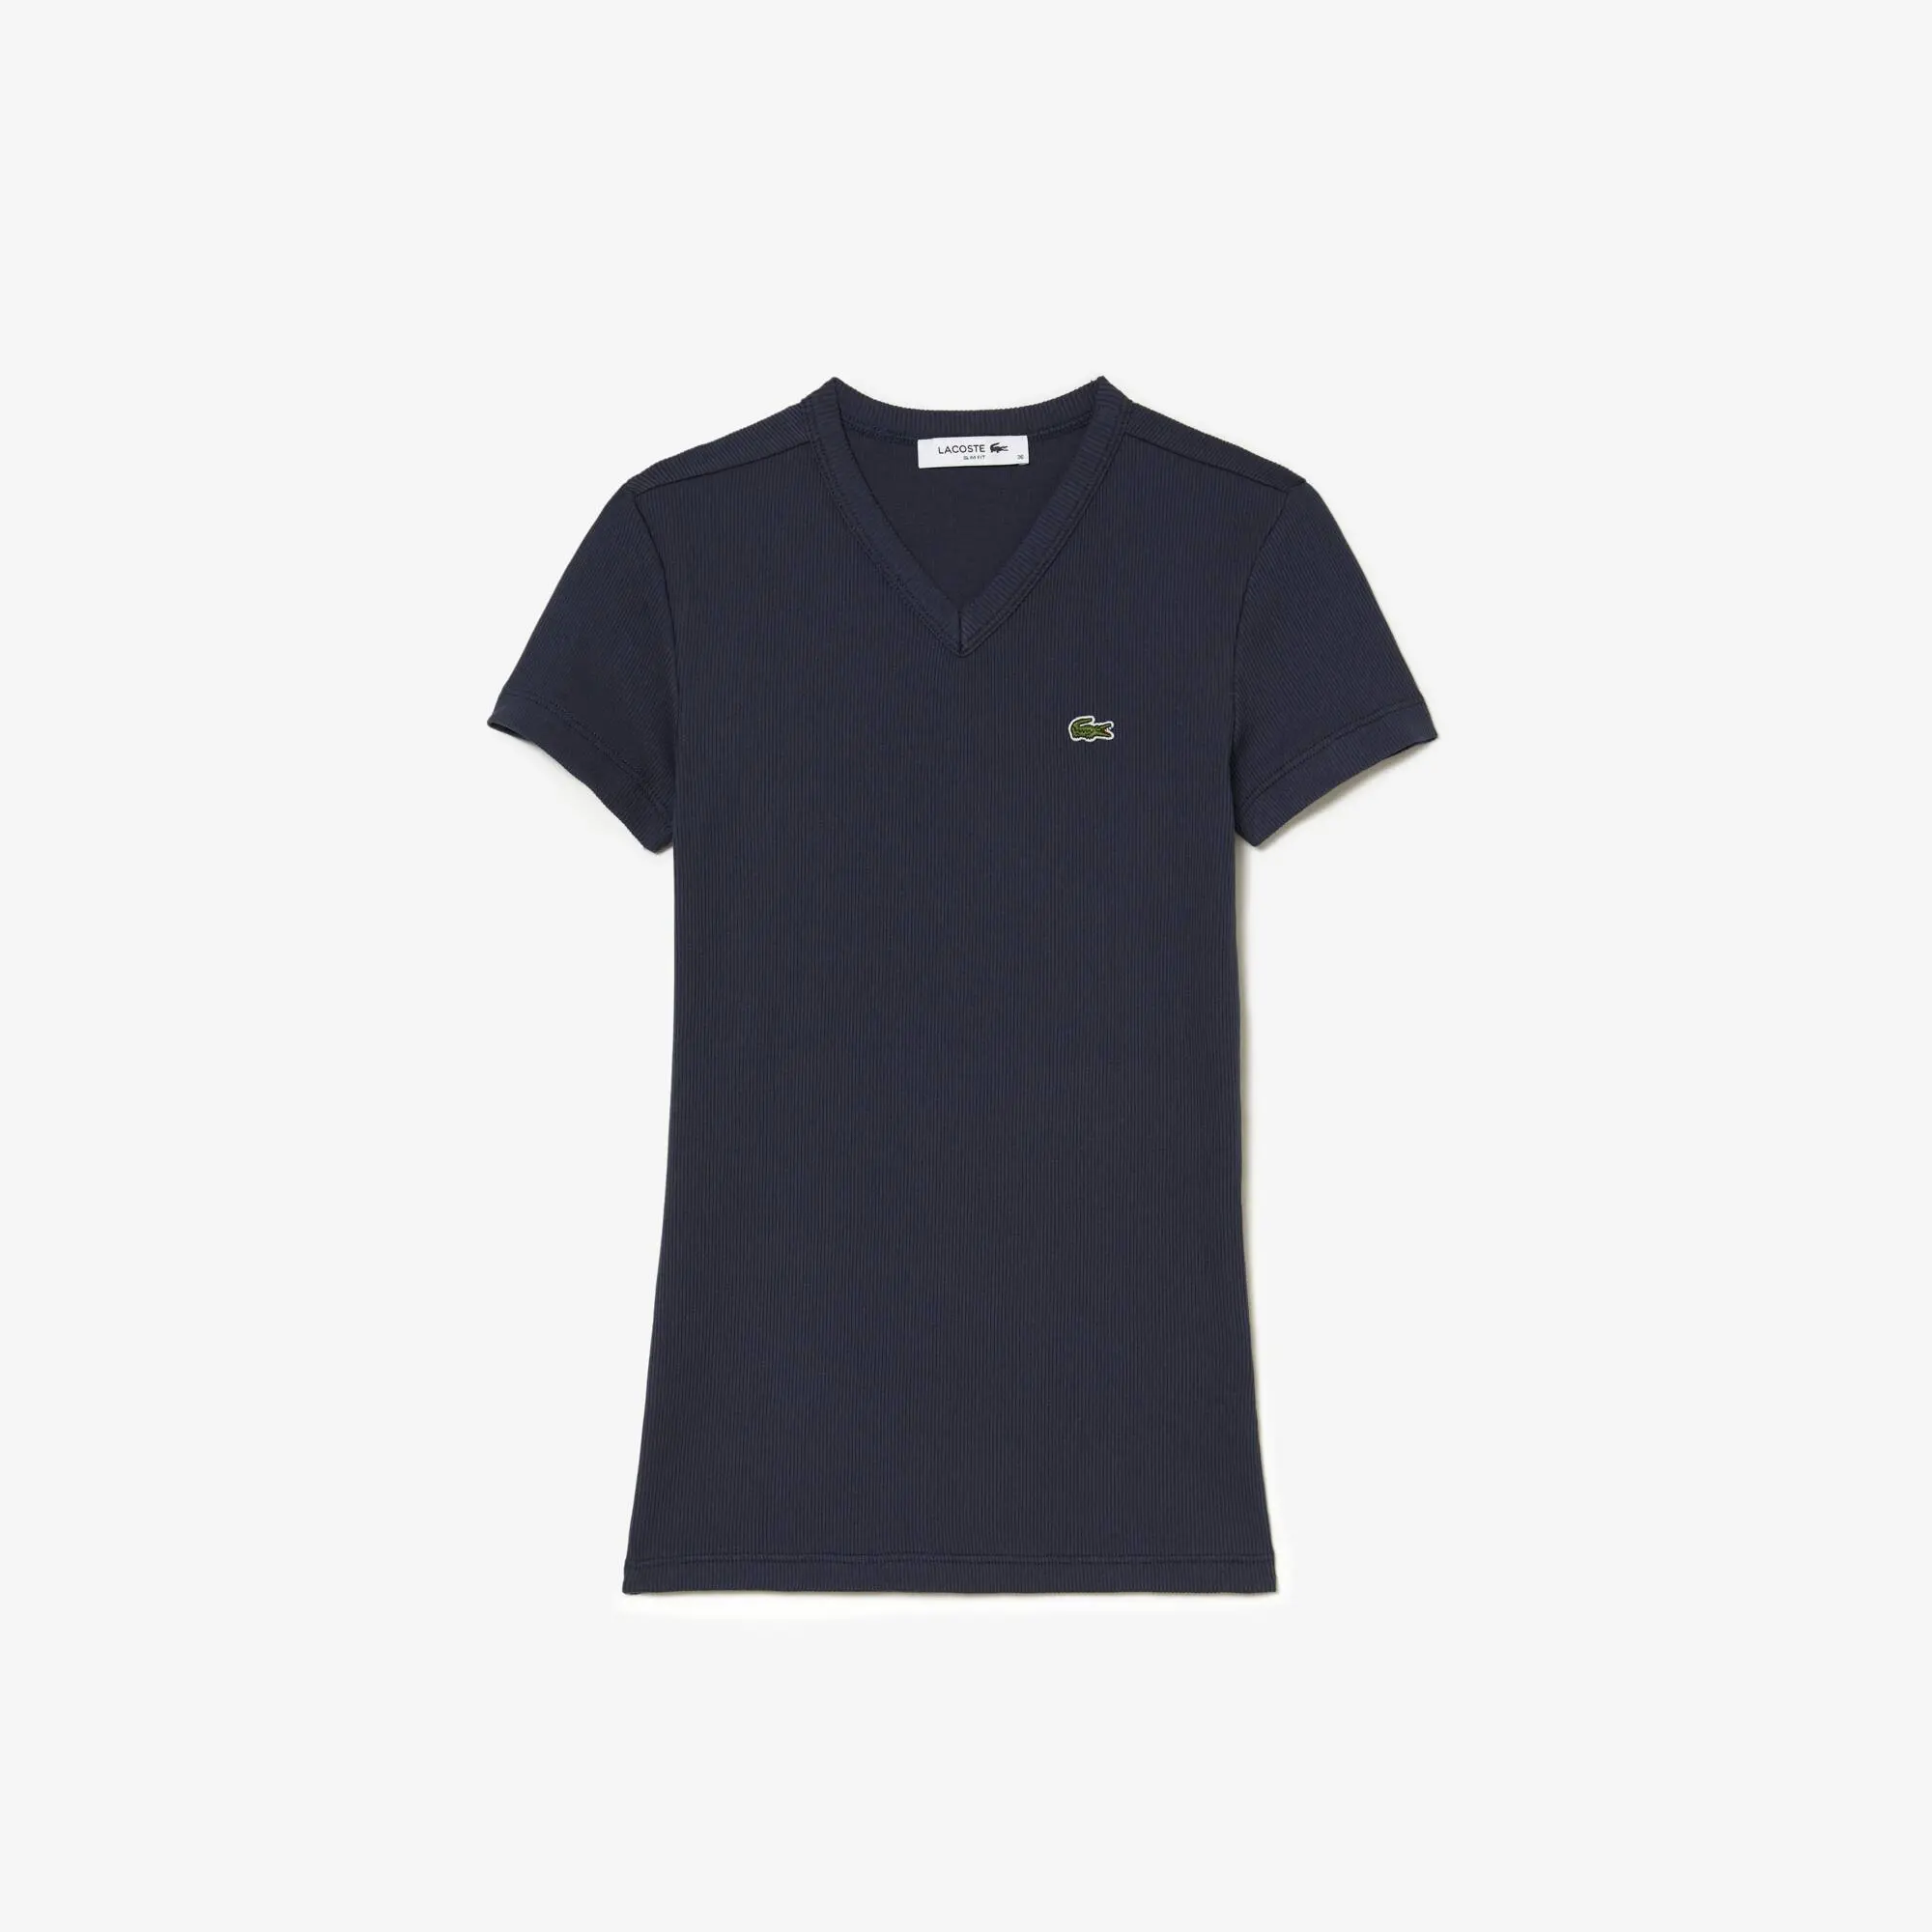 Lacoste Women’s Lacoste Slim Fit Organic Cotton V-neck T-shirt. 2